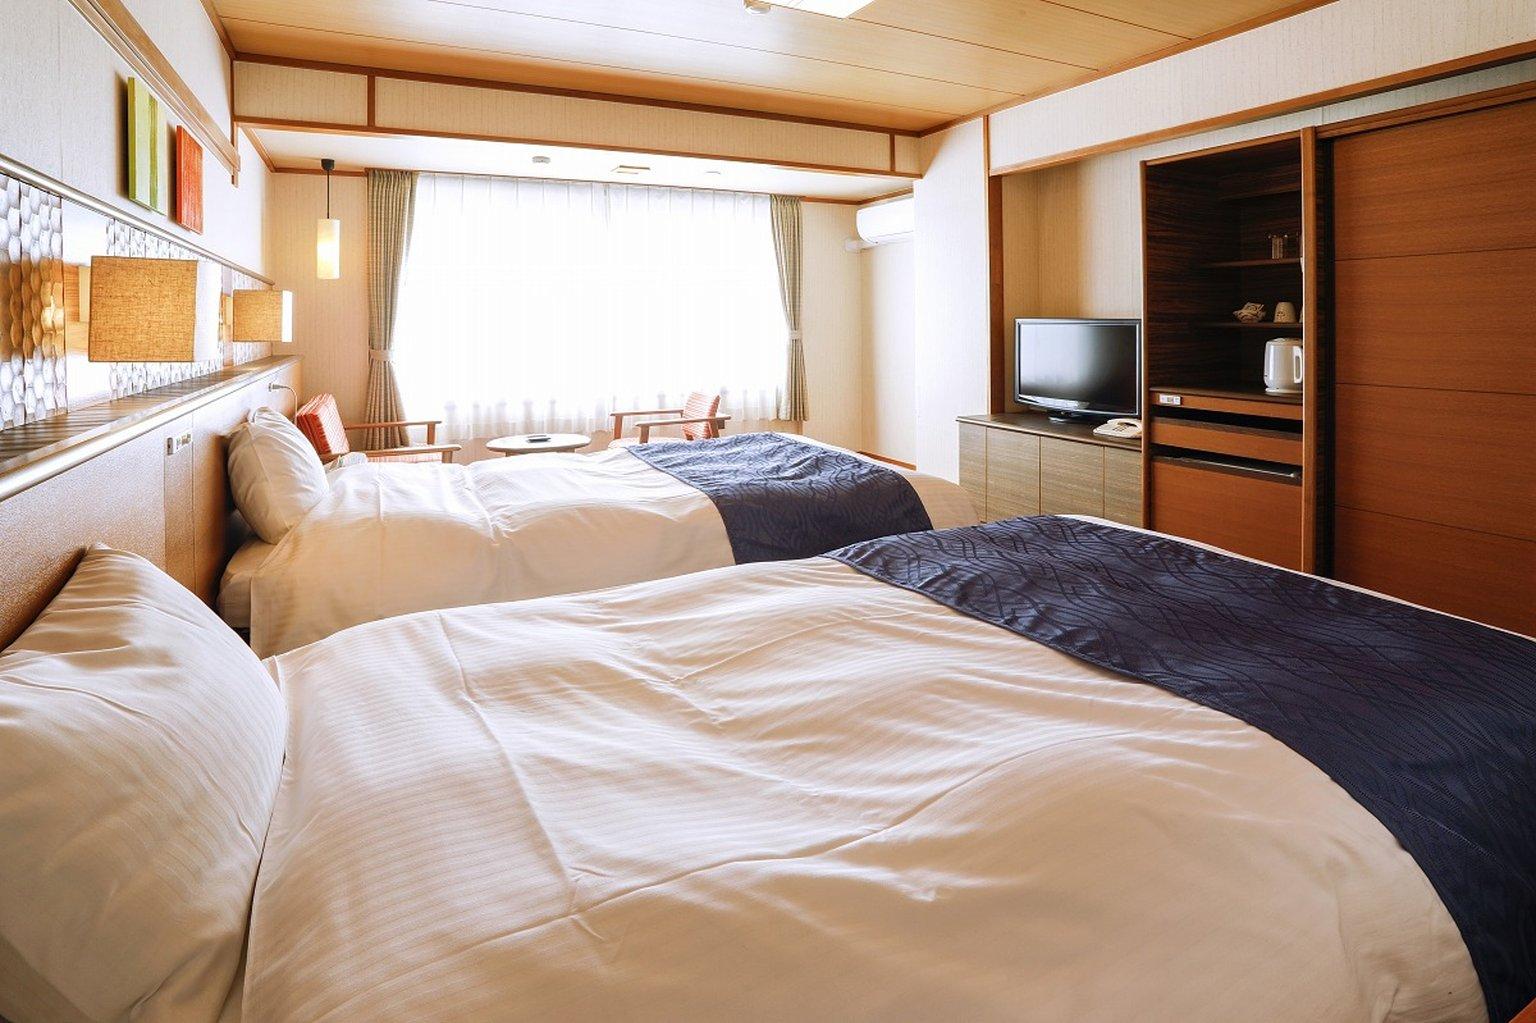 일본식 트윈 침대 또는 10 다다미 방 (금연, 화장실 없음) - 사토야마 노 규지쓰 교토 게부리카와